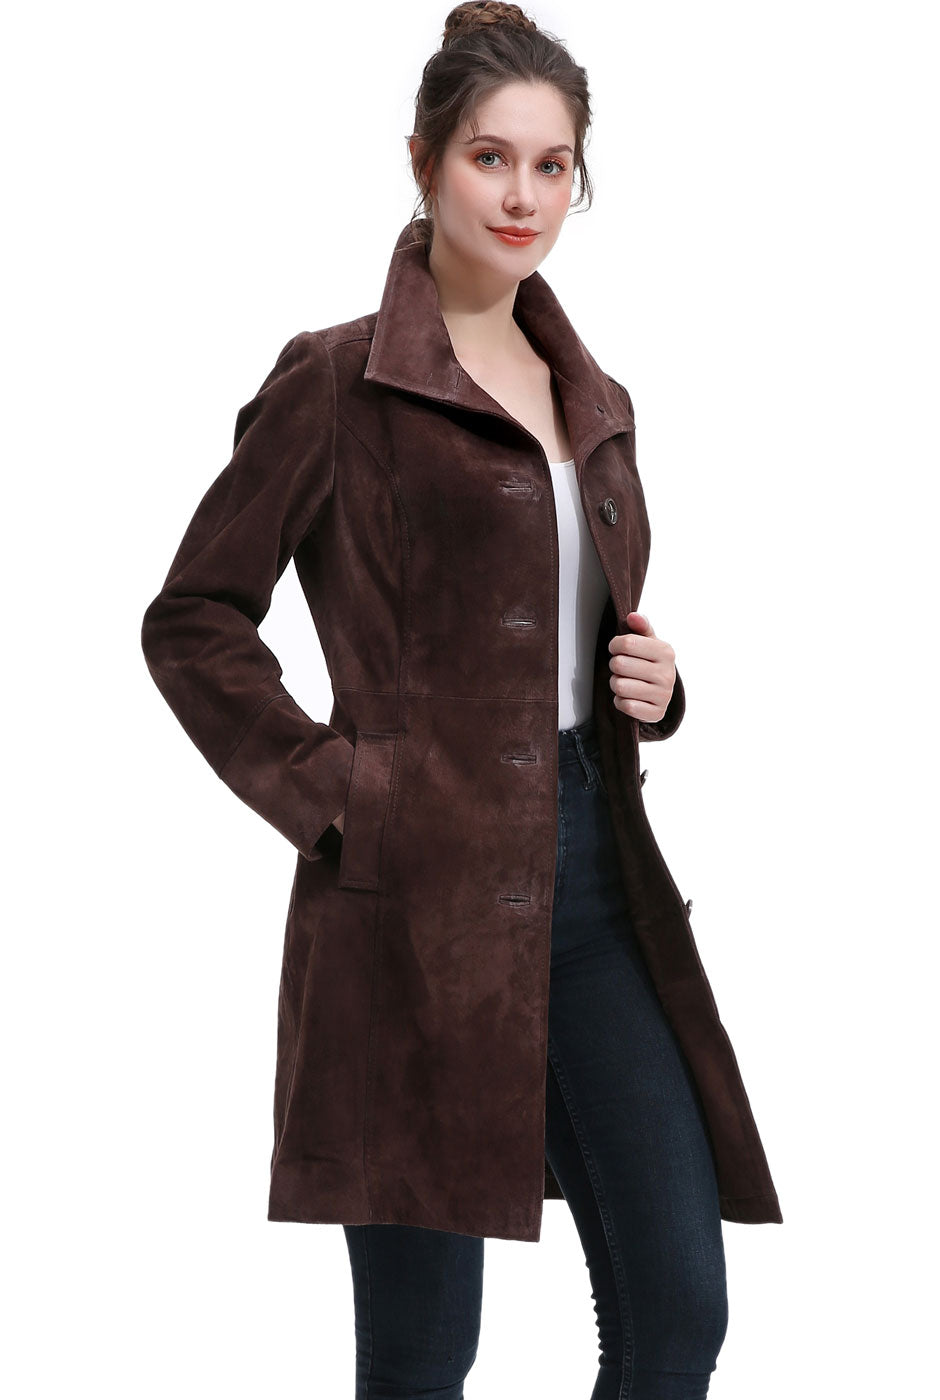 BGSD Women Janel Suede Leather Walking Coat